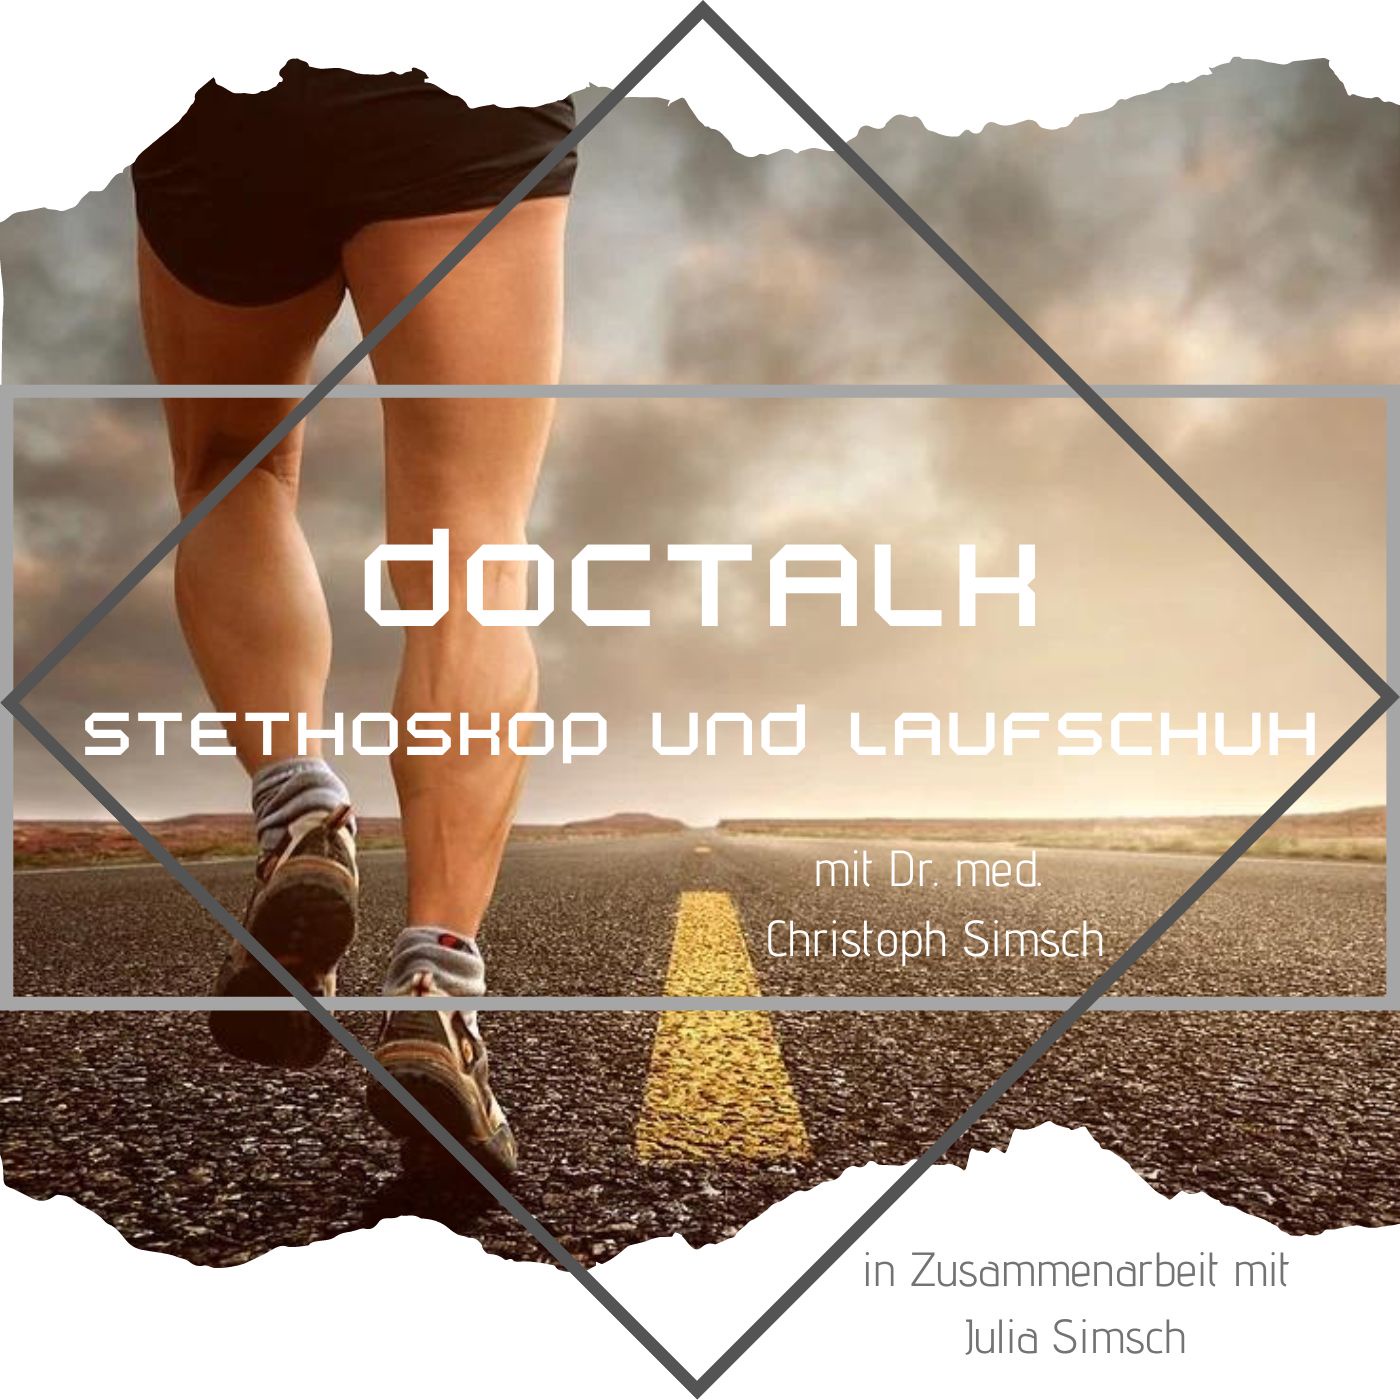 DocTalk - Stethoskop und Laufschuh (mit Dr. med. Christoph Simsch)